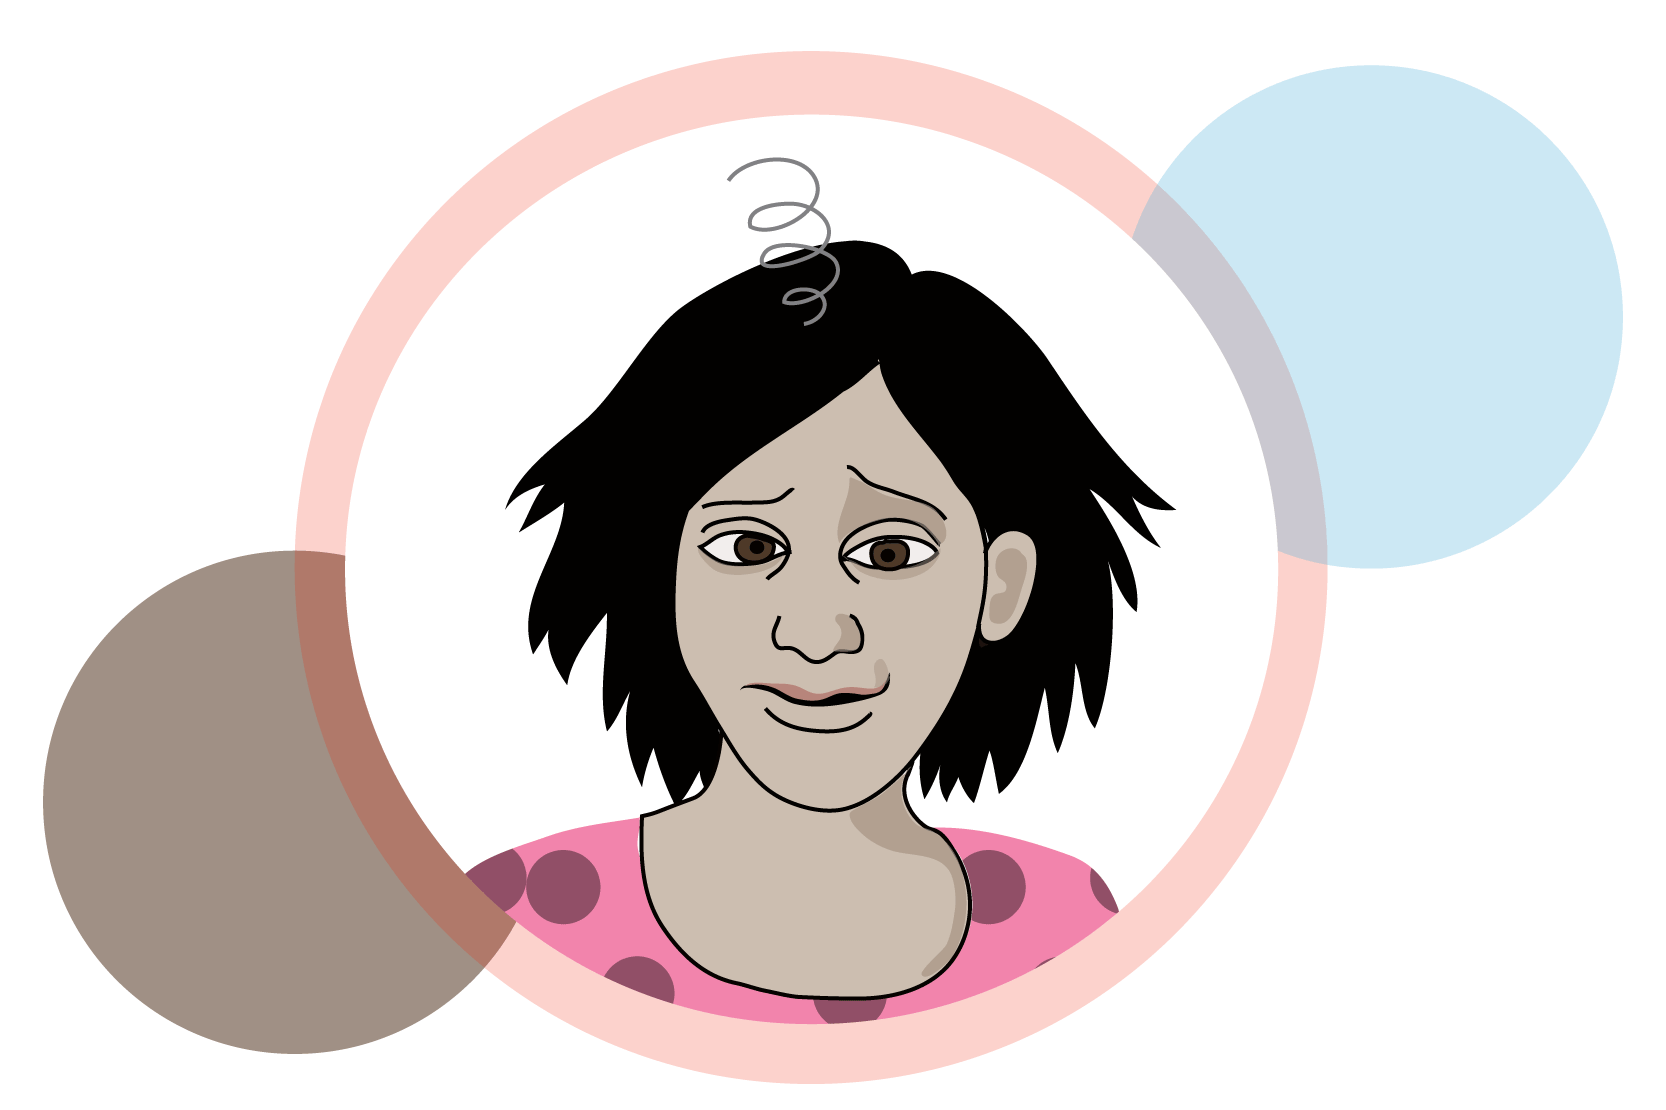 En person som ser illamående och yr ut, illustration.